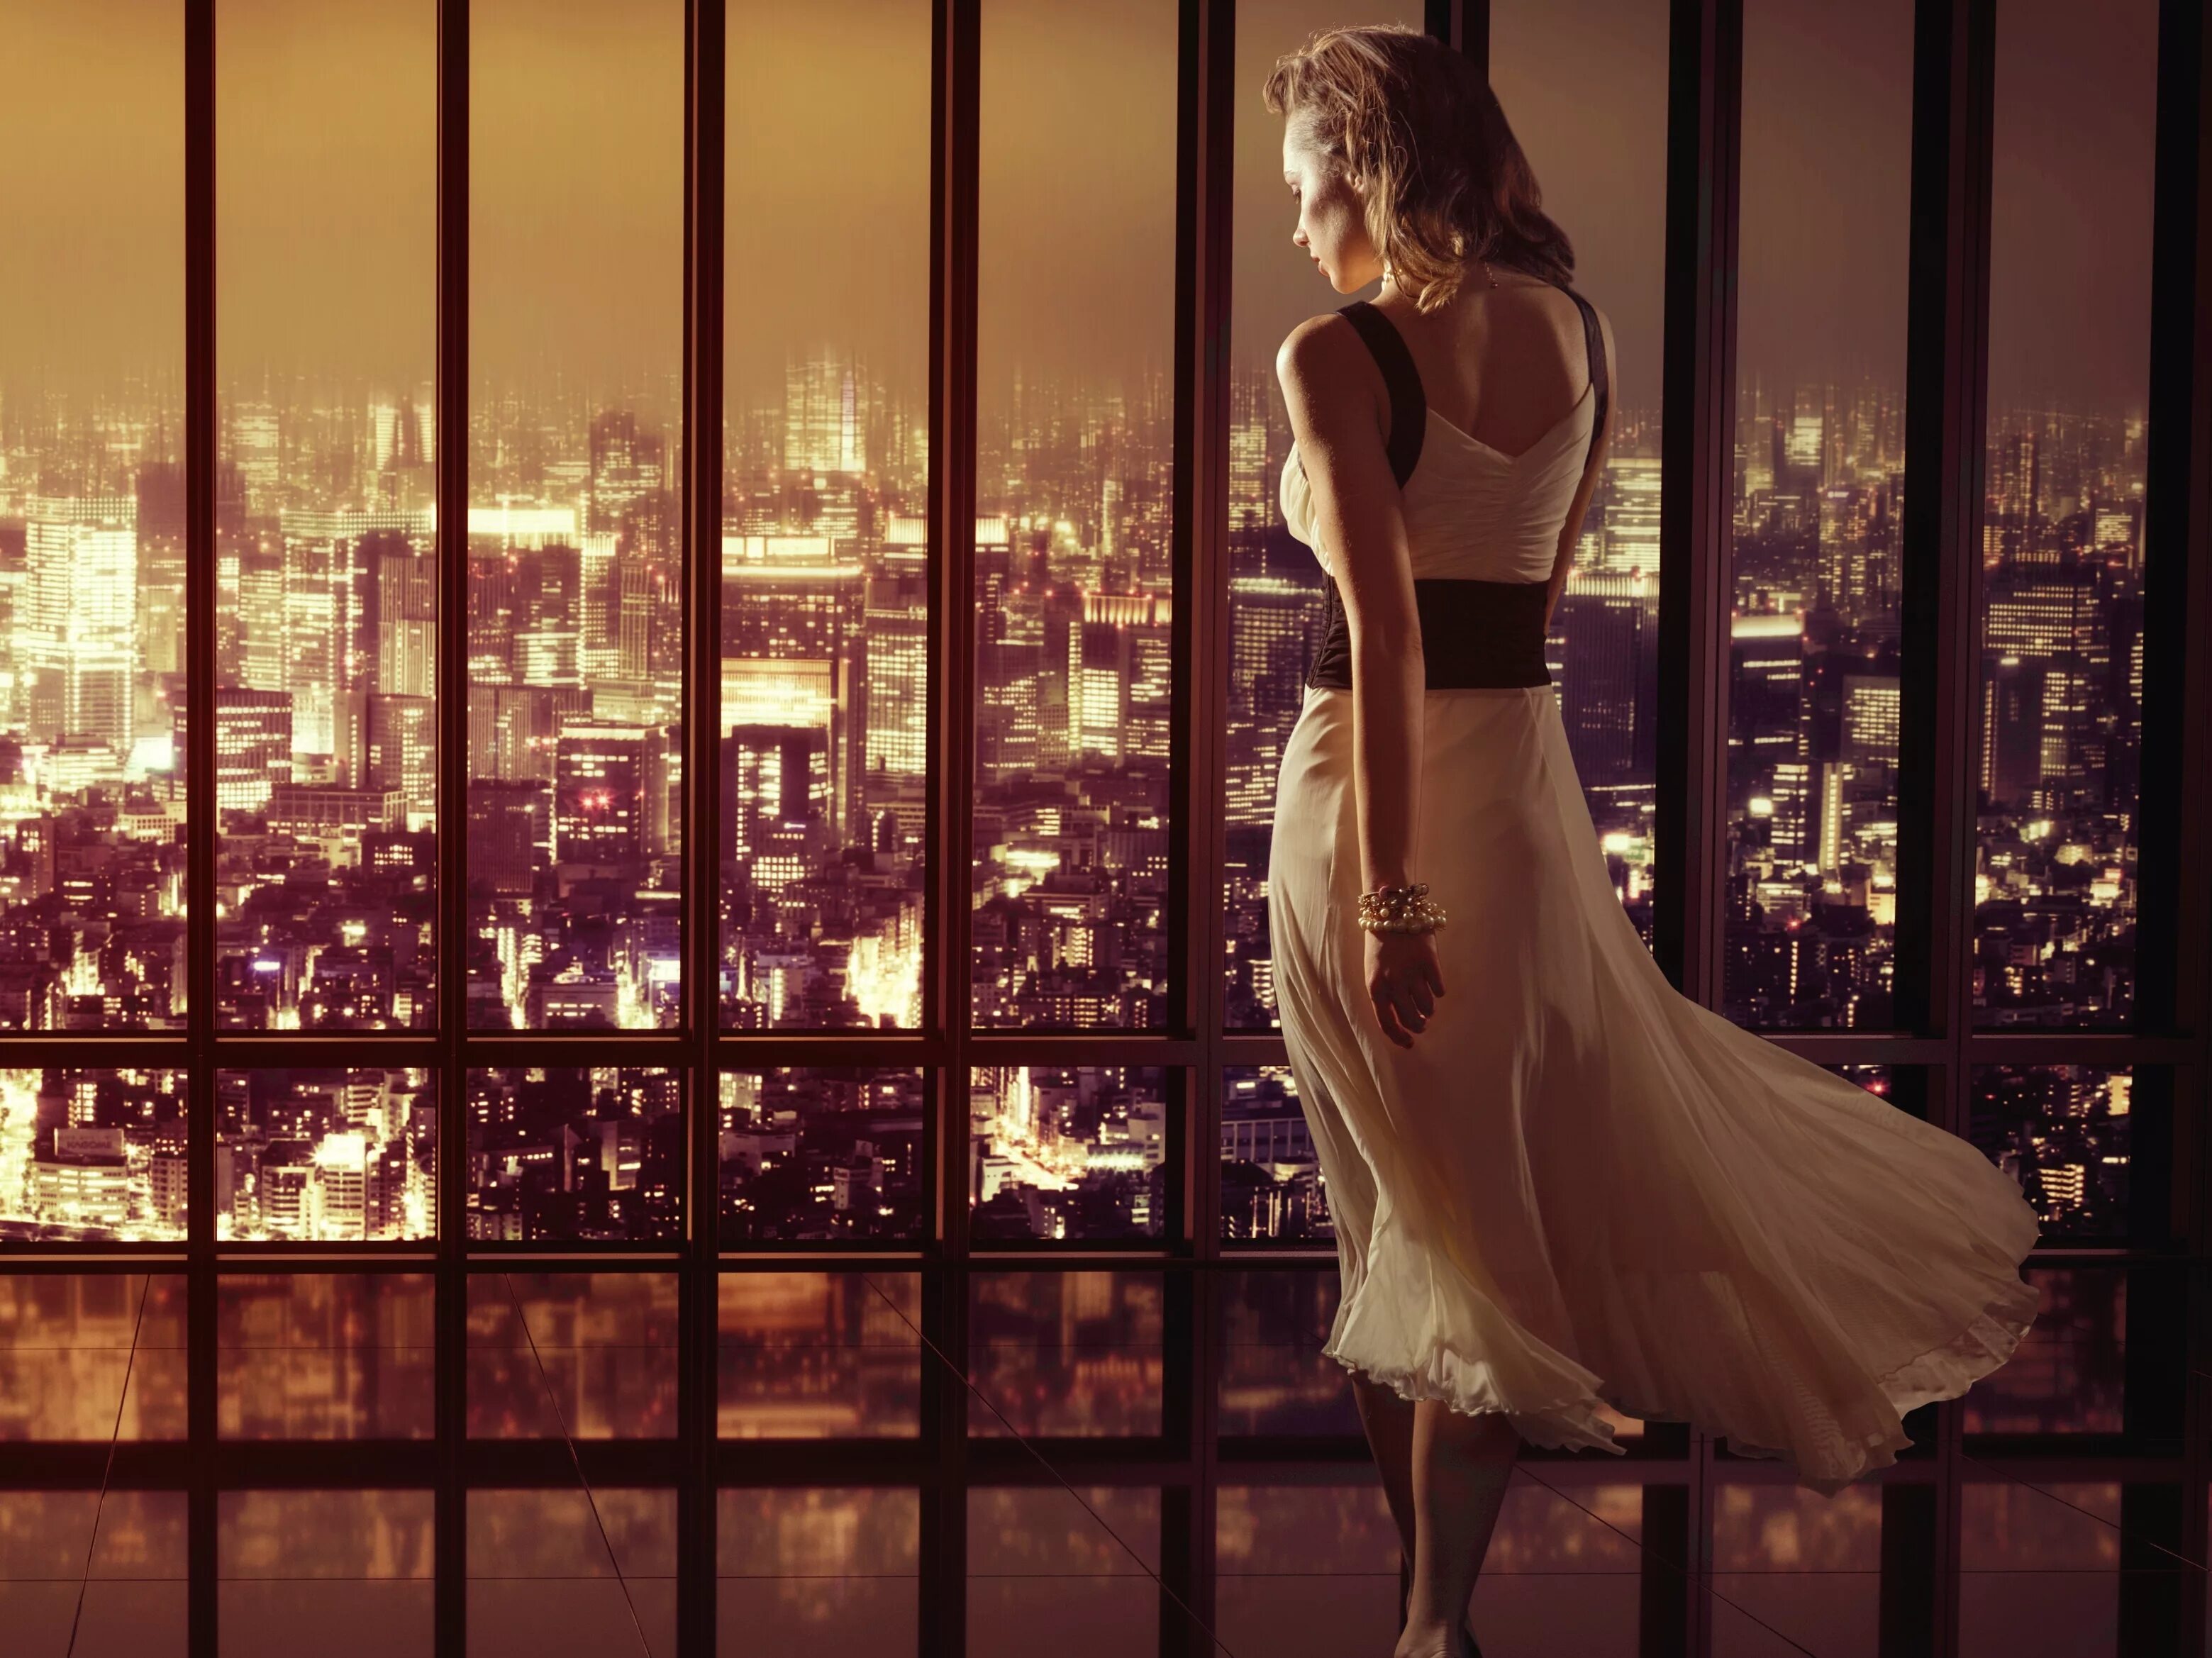 Фото женщин вечером. Девушка в платье красивая. Фотосессия в платье в городе. Девушка в Вечернем городе. Фотосессия на фоне окна.